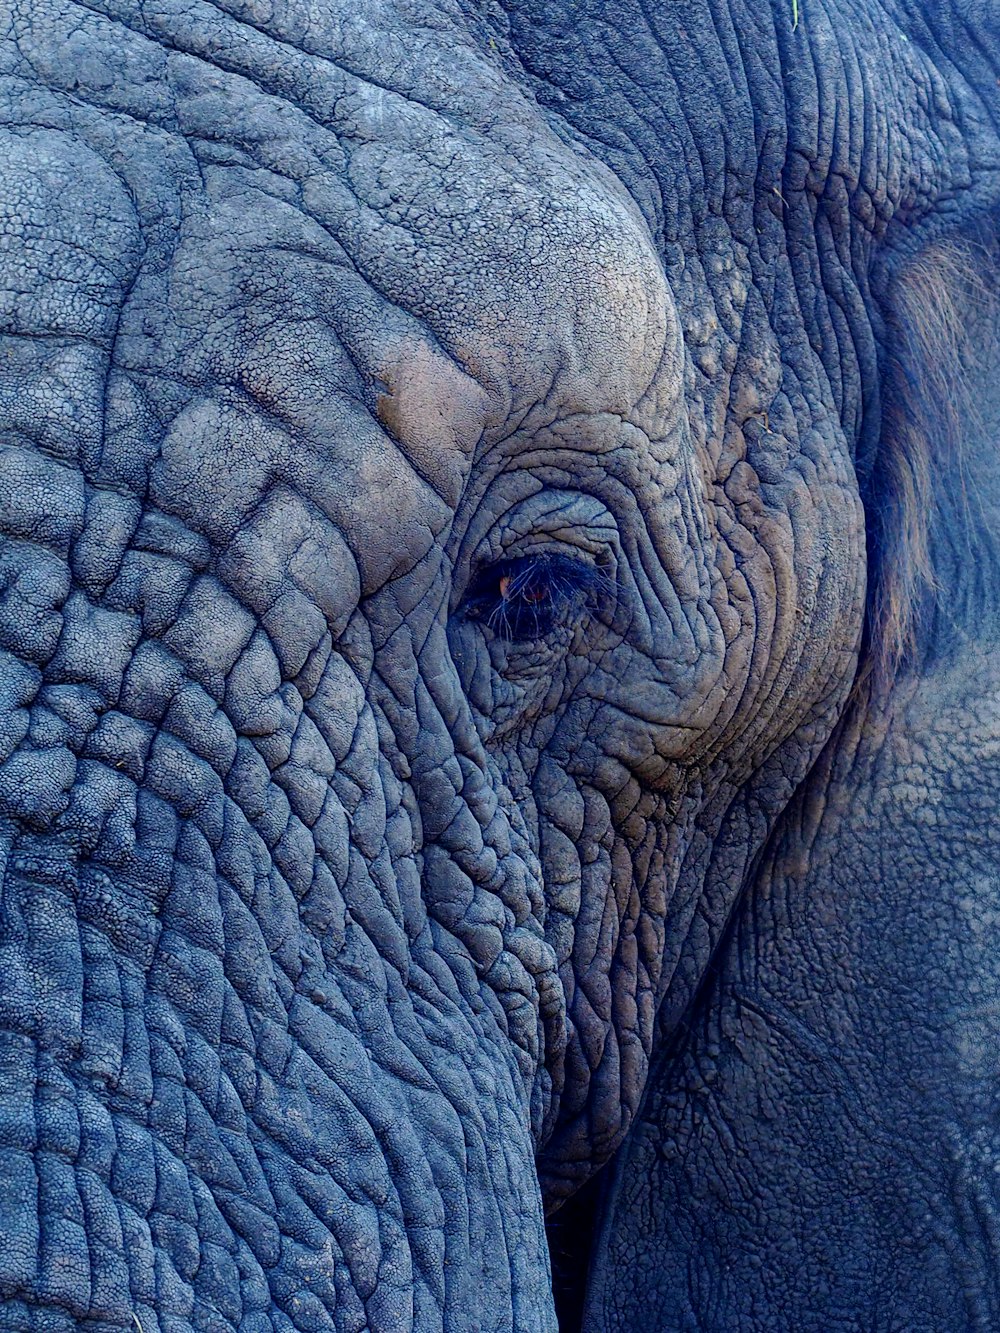 fotografia macro do rosto do elefante